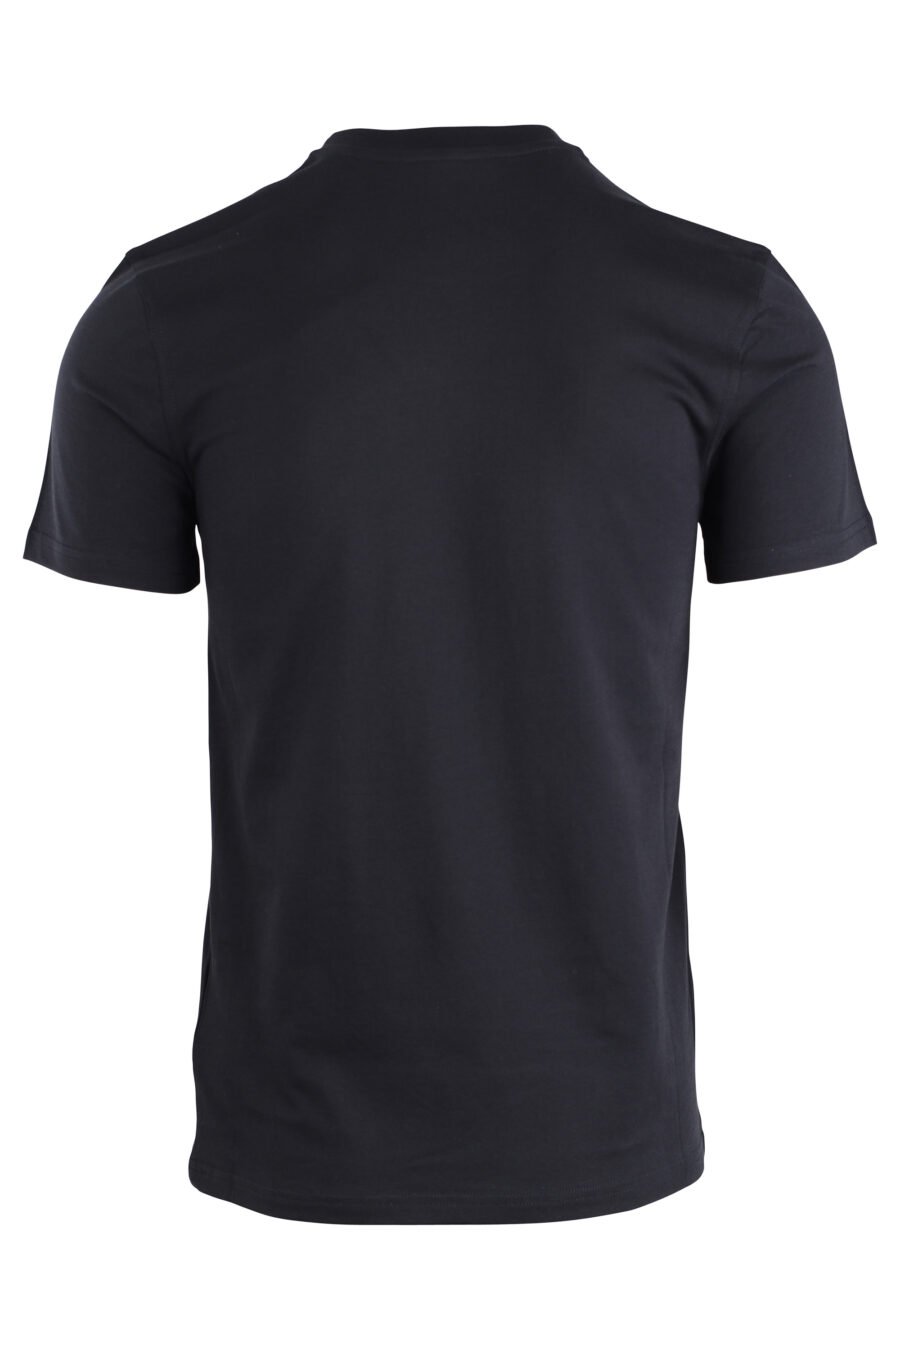 T-shirt preta com minilogo de urso monocromático - IMG 1671